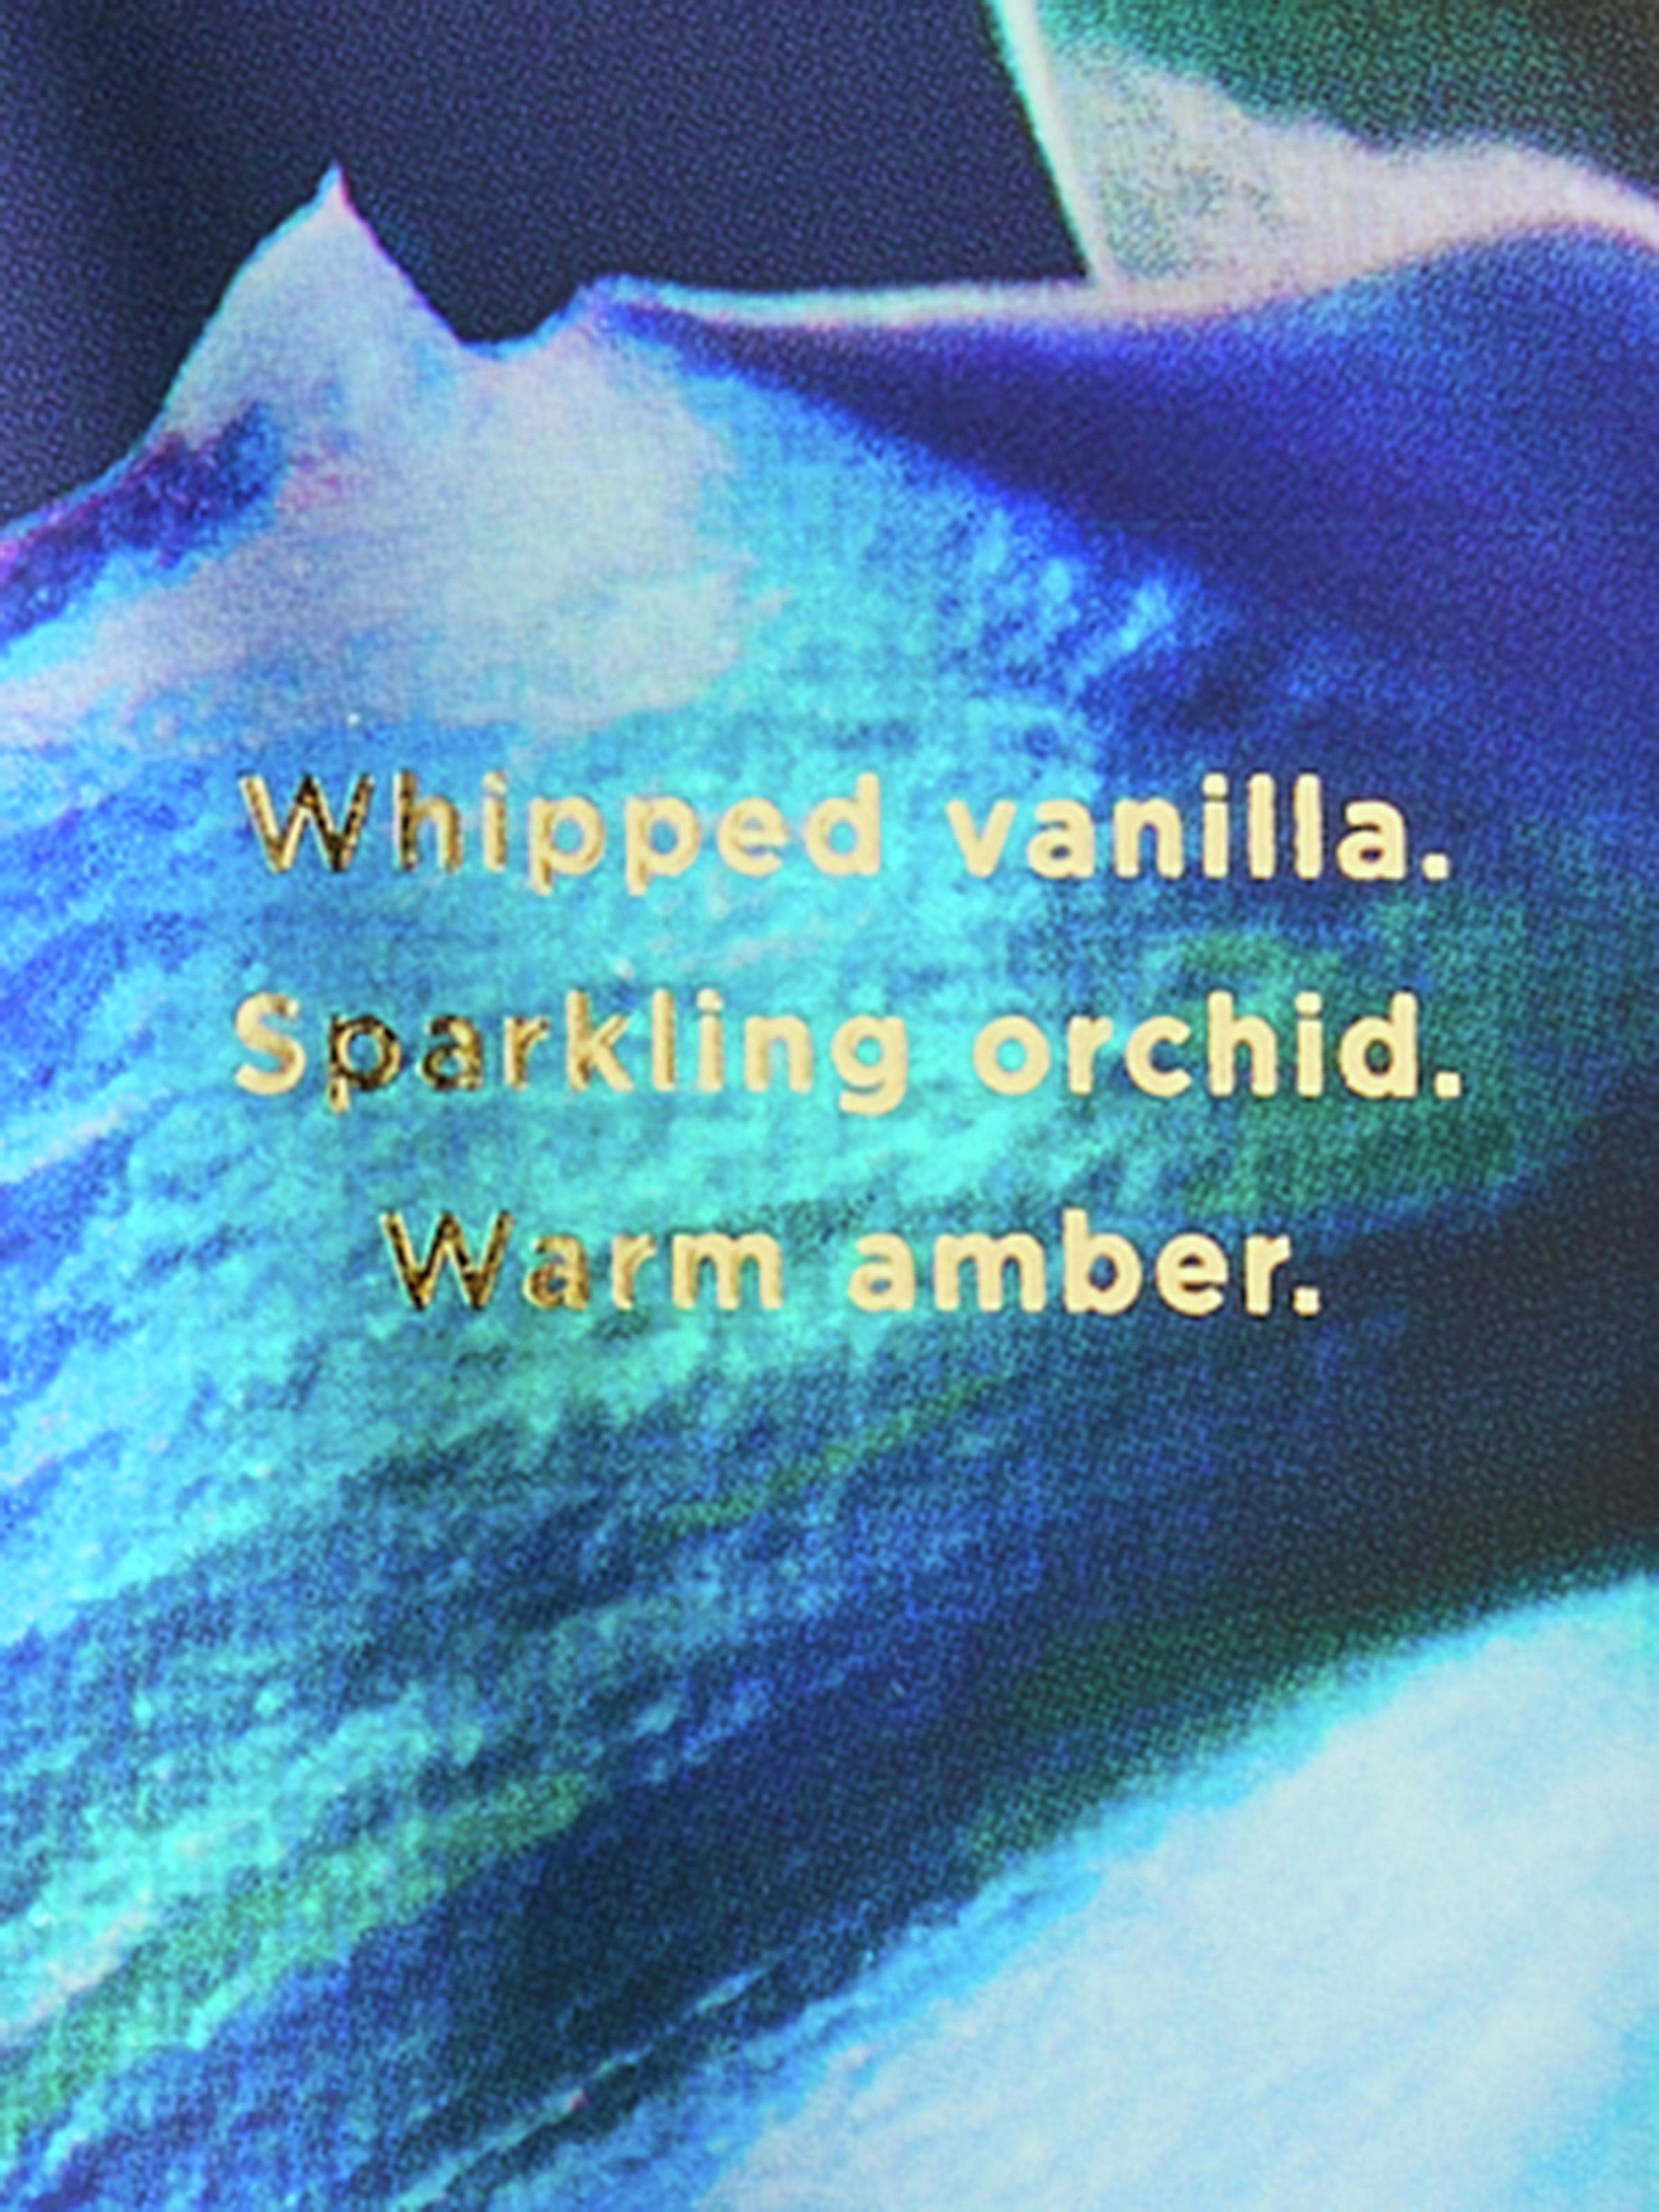 Colleción Exclusiva De Cremas Corporales Perfumadas Ramadan - Vanilla Sapphire Orchid, Description, large